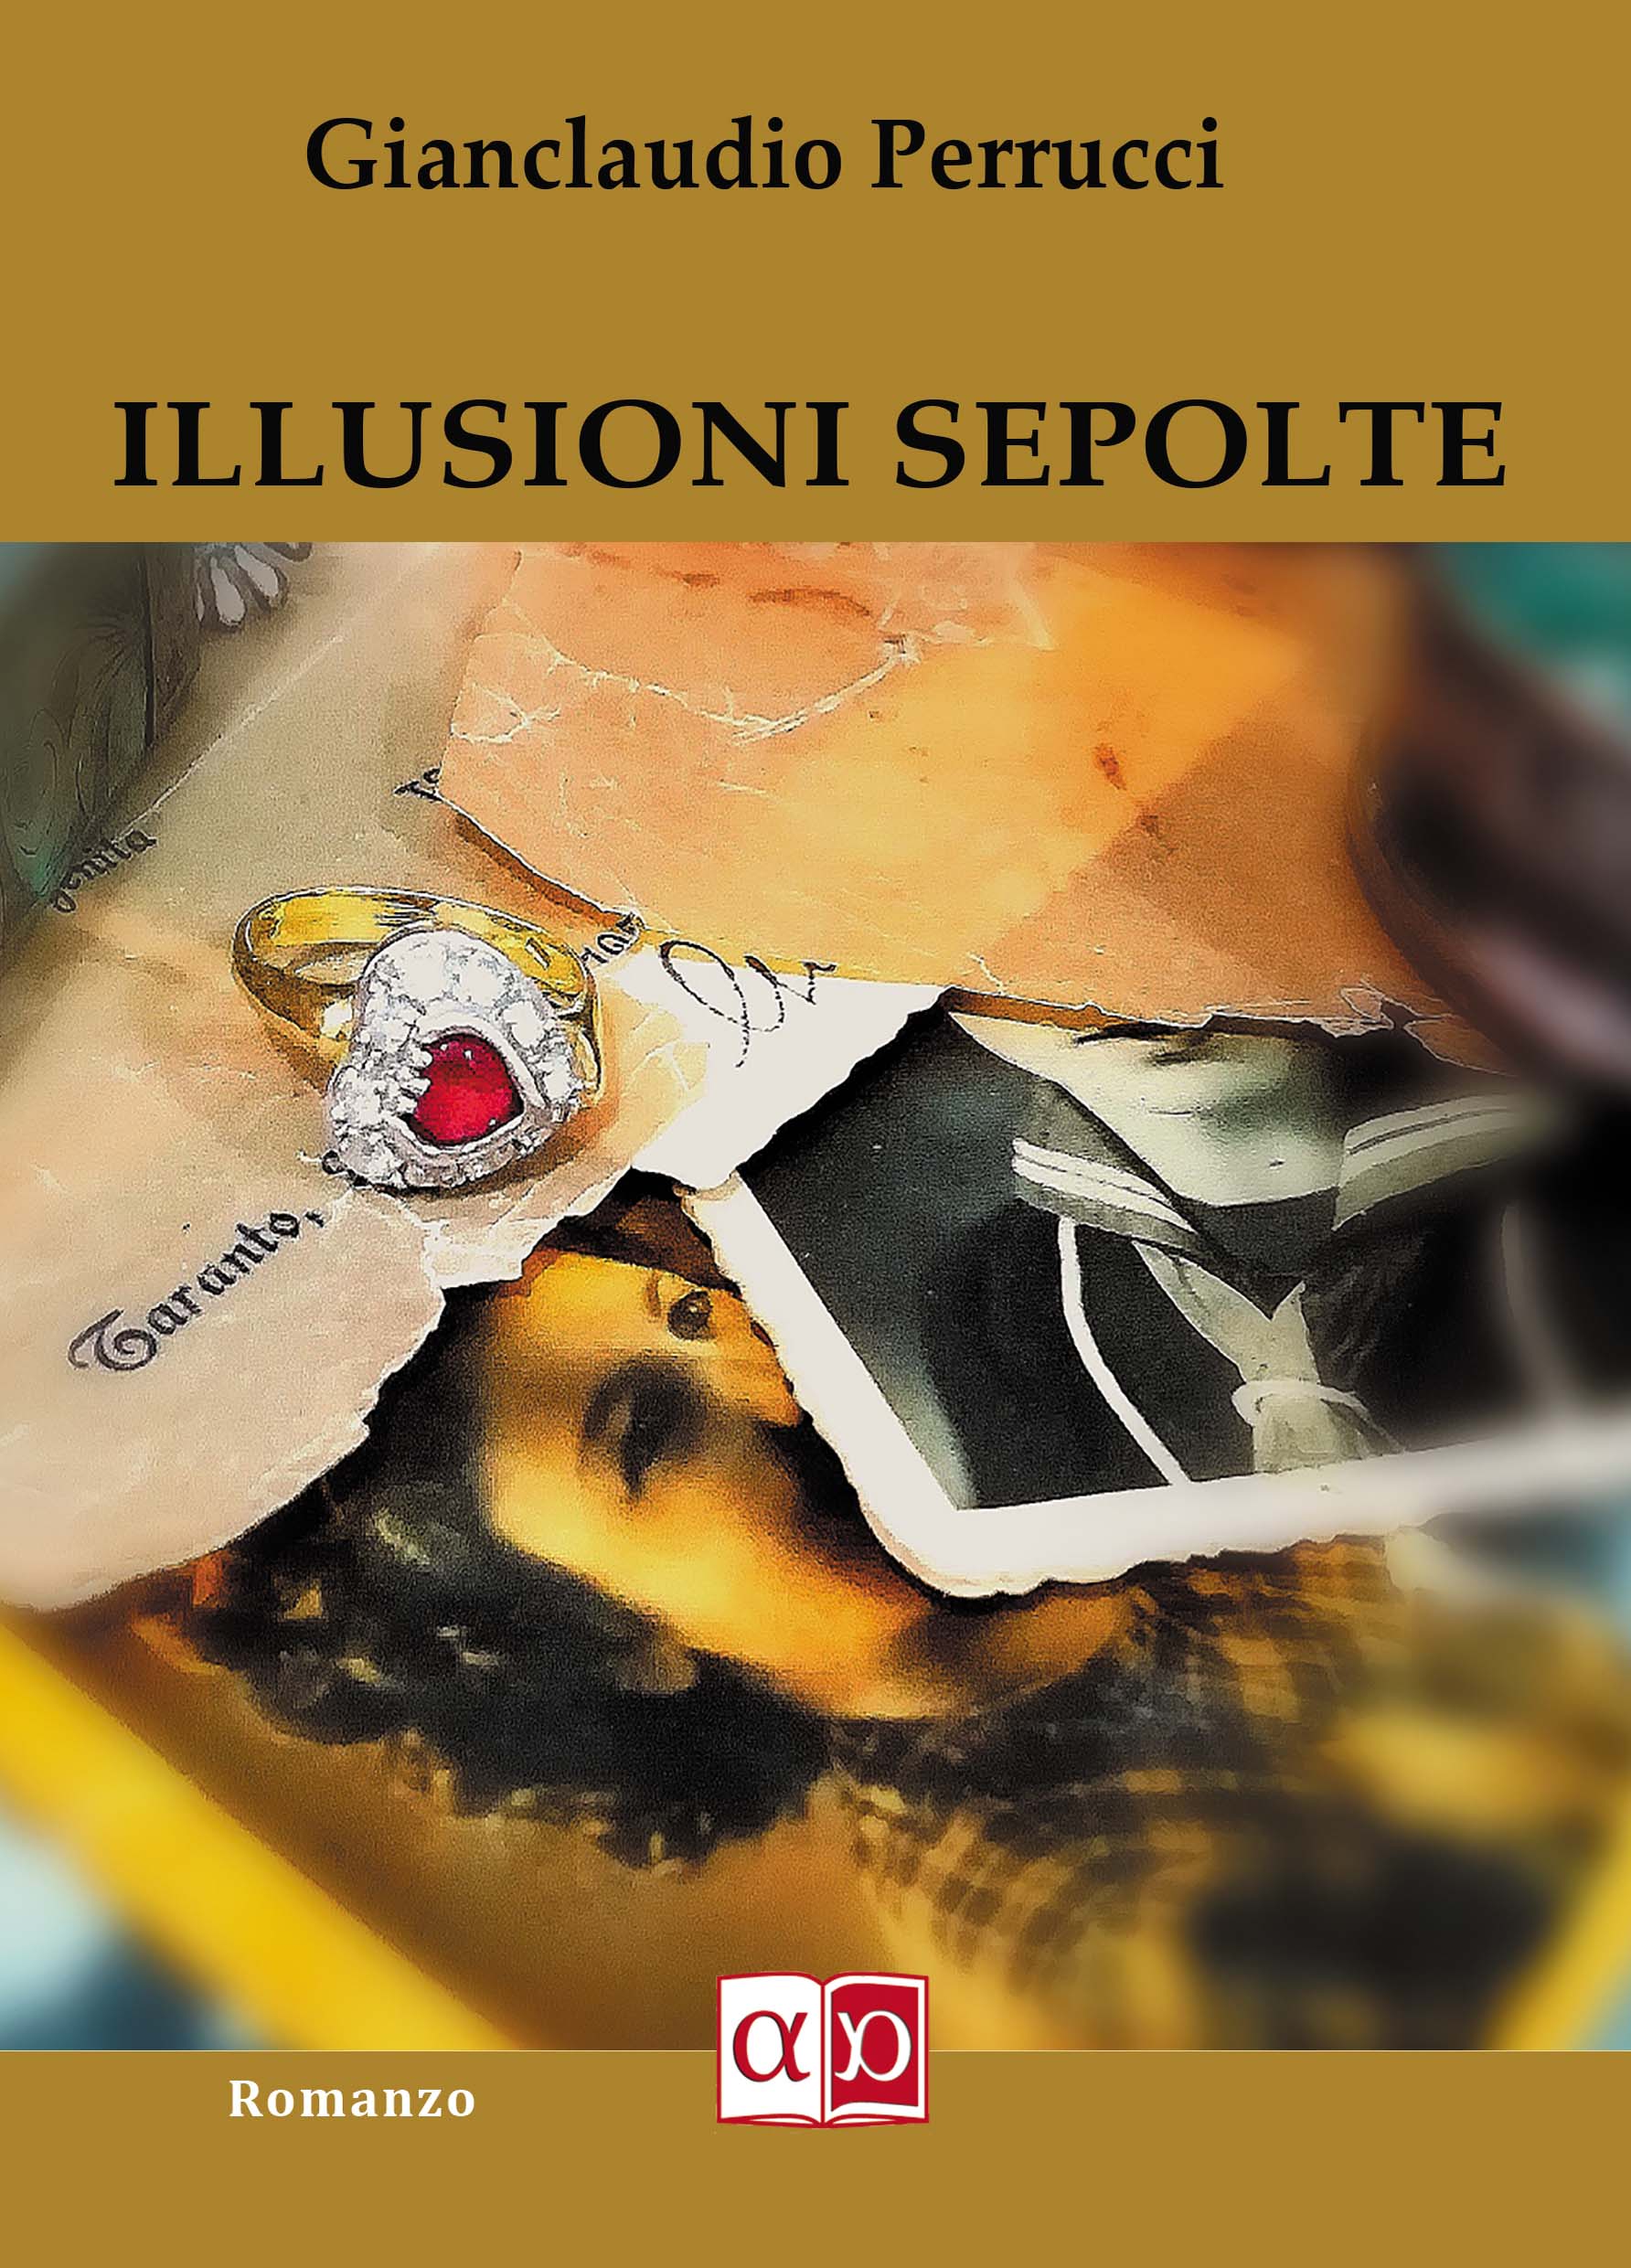 ILLUSIONI SEPOLTE - Gianclaudio Perrucci